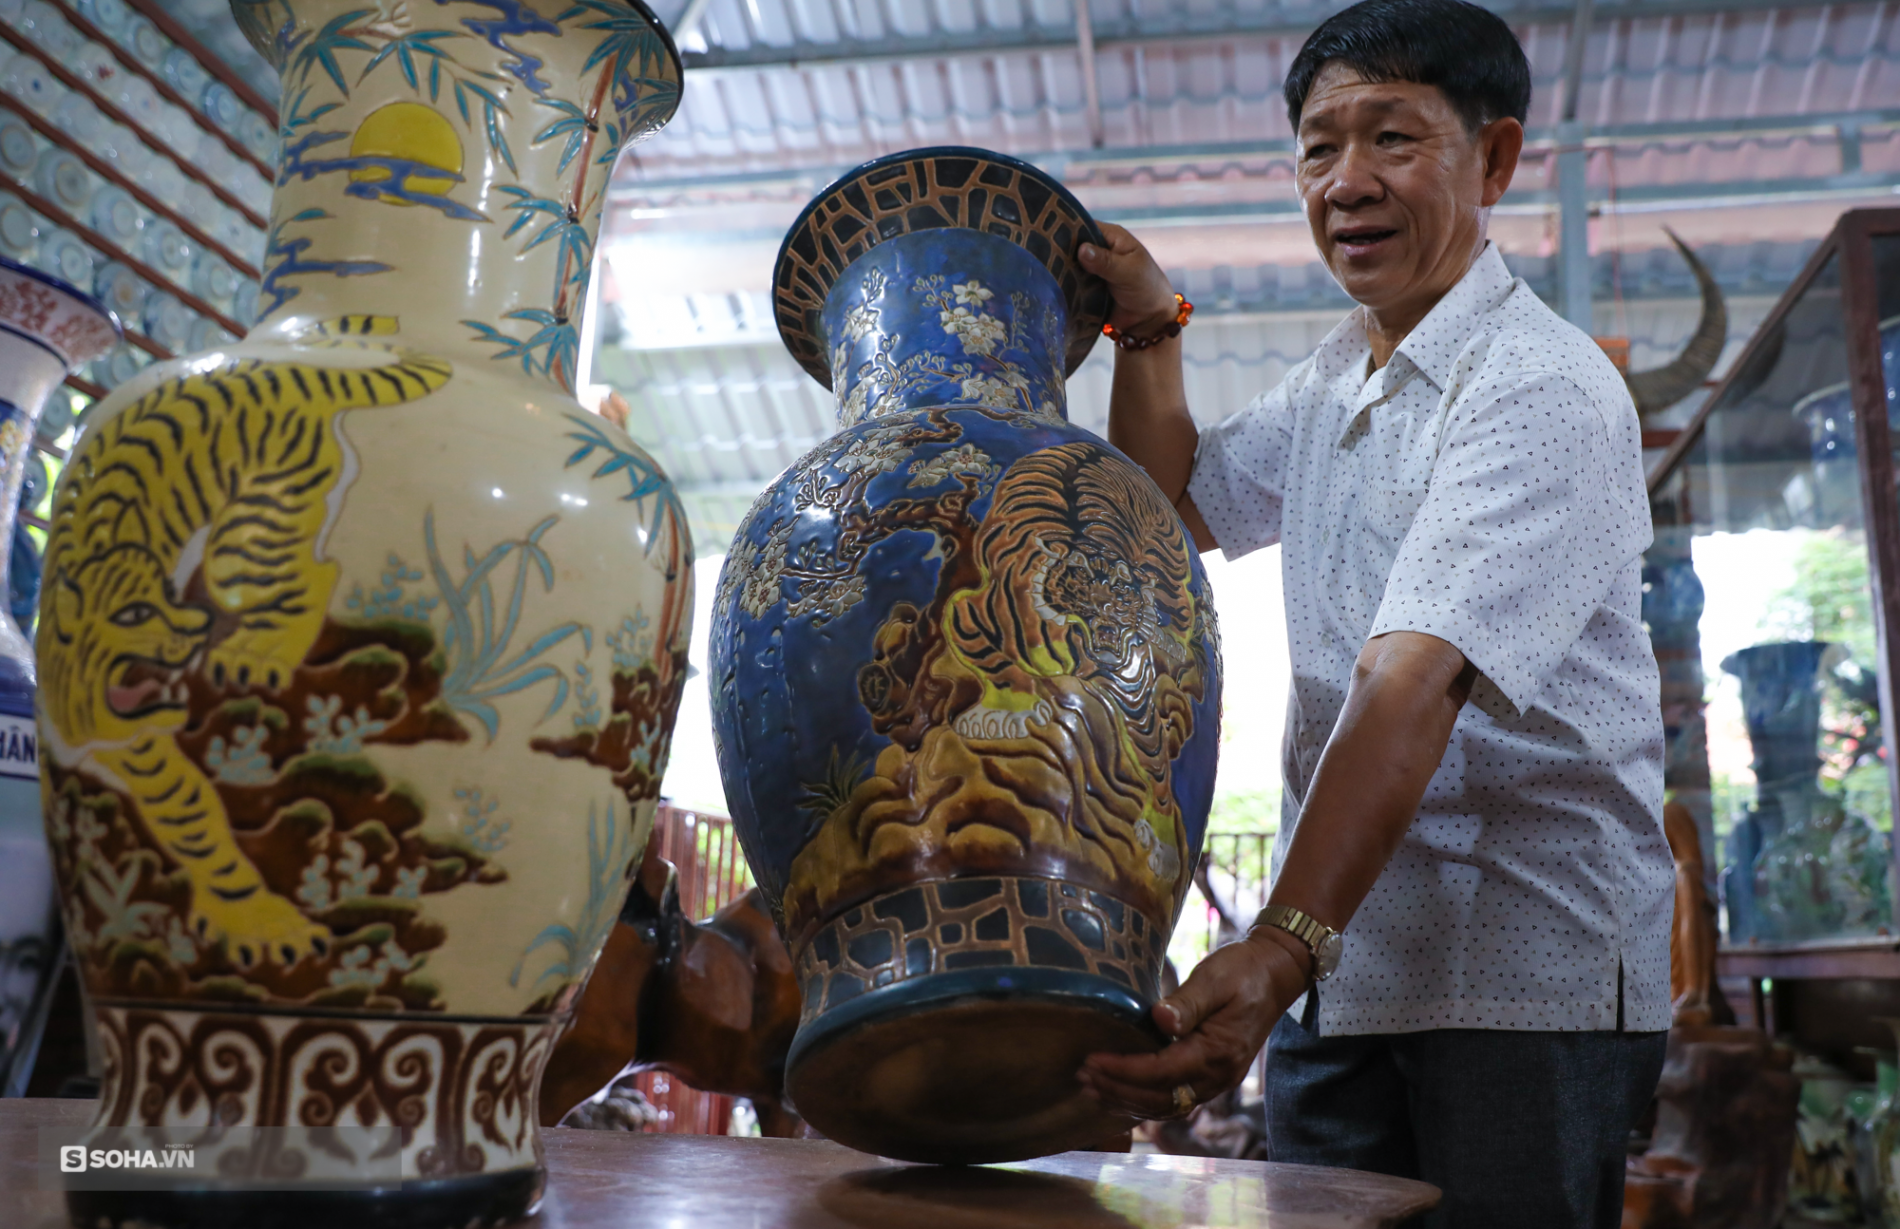 ‘Hoa mắt’ với bộ sưu tập gốm sứ lớn nhất Đông Dương, có món lên tới cả triệu USD - Ảnh 5.